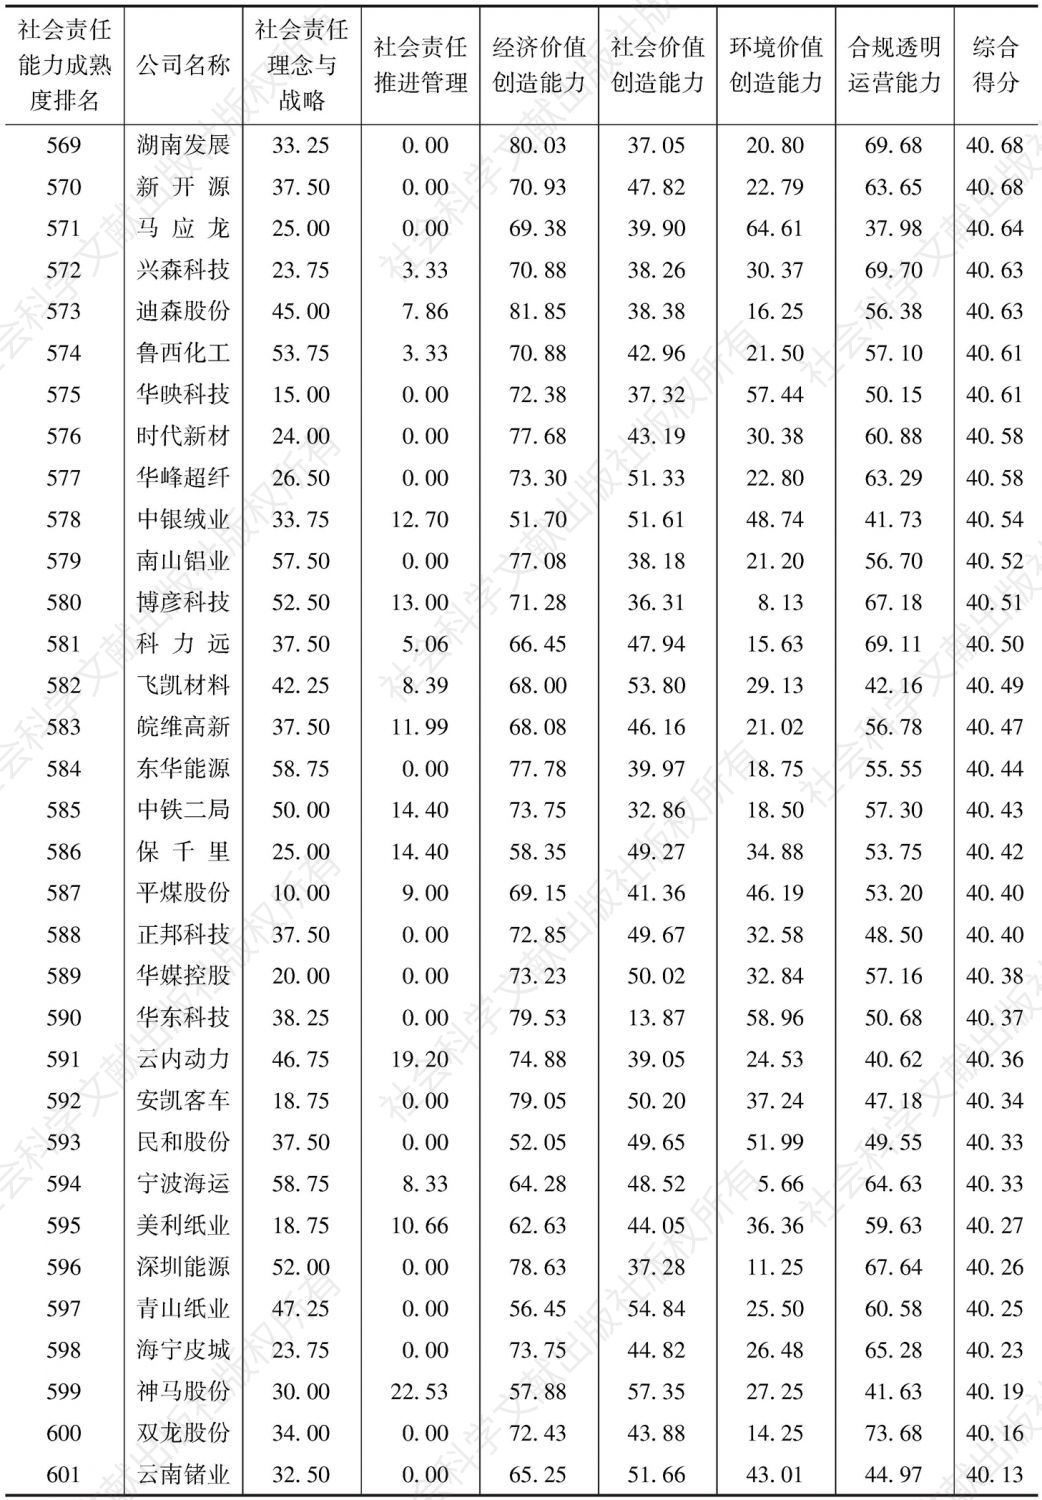 中国上市公司社会责任能力成熟度指数（2016）-续表18